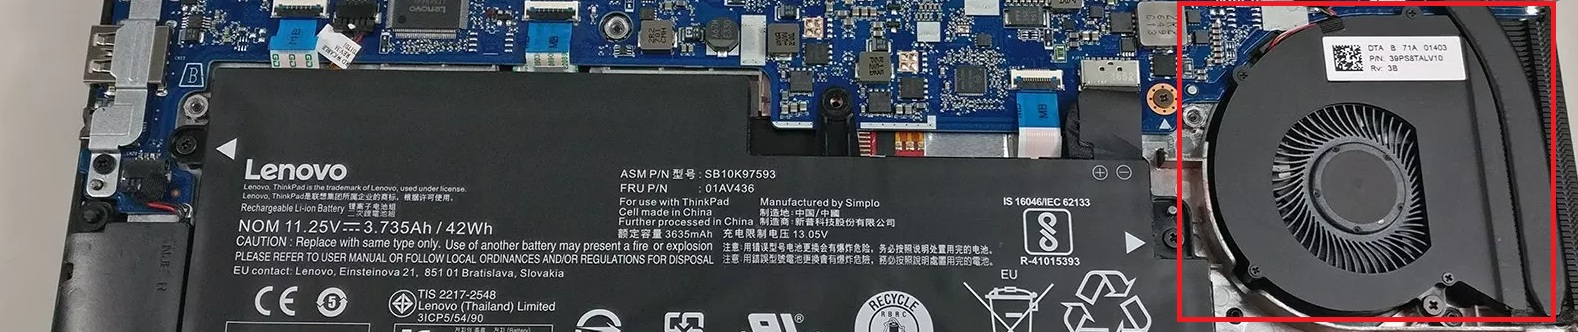 Internal Cooling Fan for Lenovo Laptop